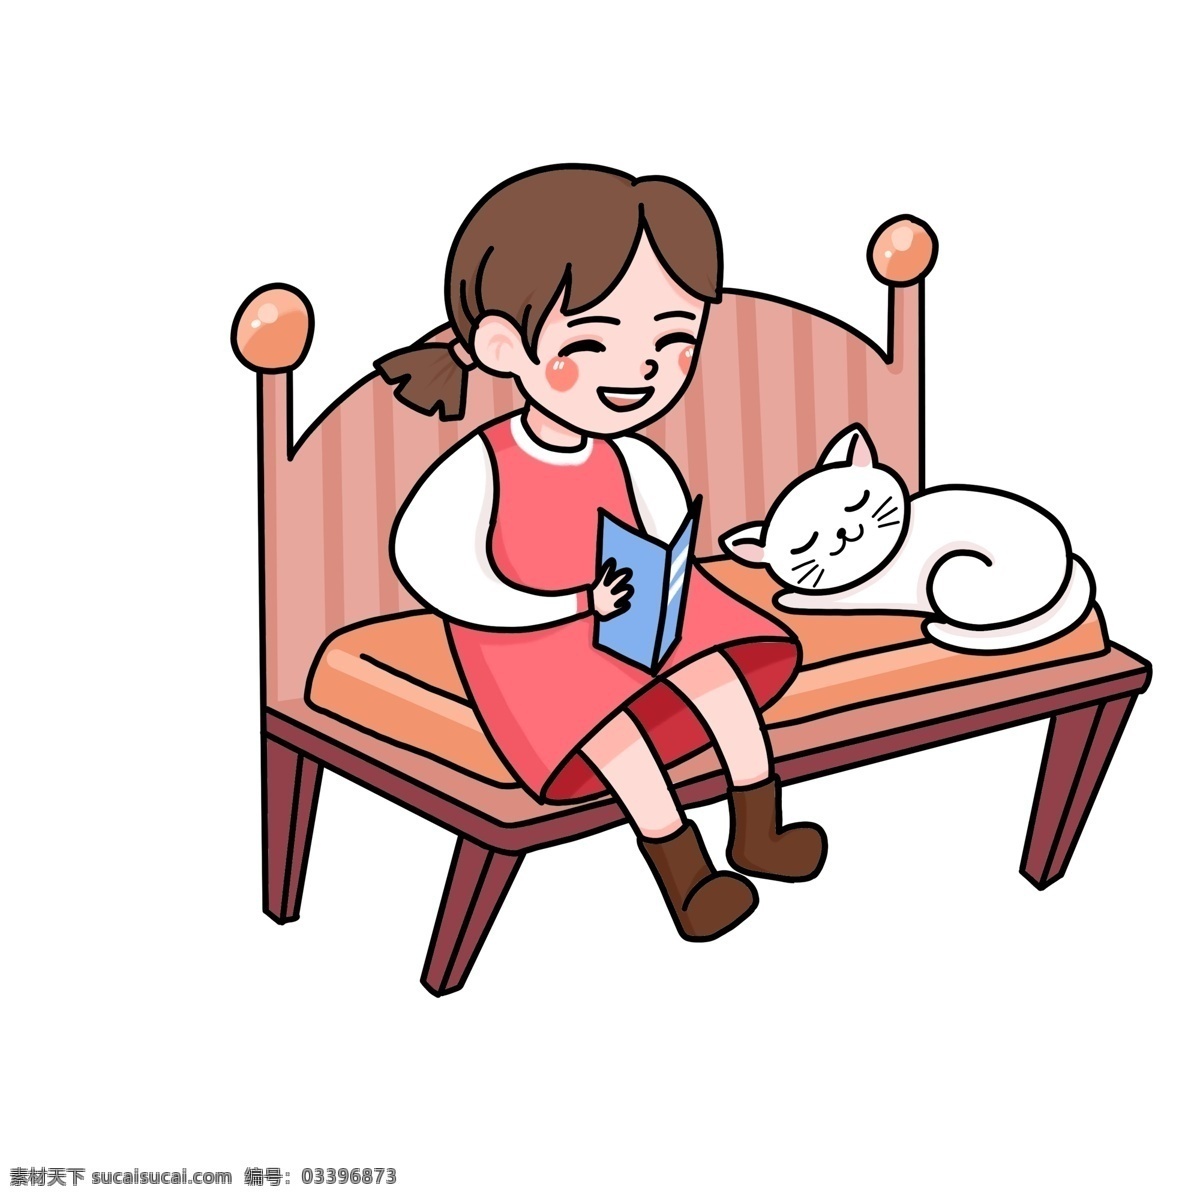 坐在 椅子 上 看书 女孩 漫画 人物 商用 元素 漫画人物 卡通 插画 手绘 猫咪